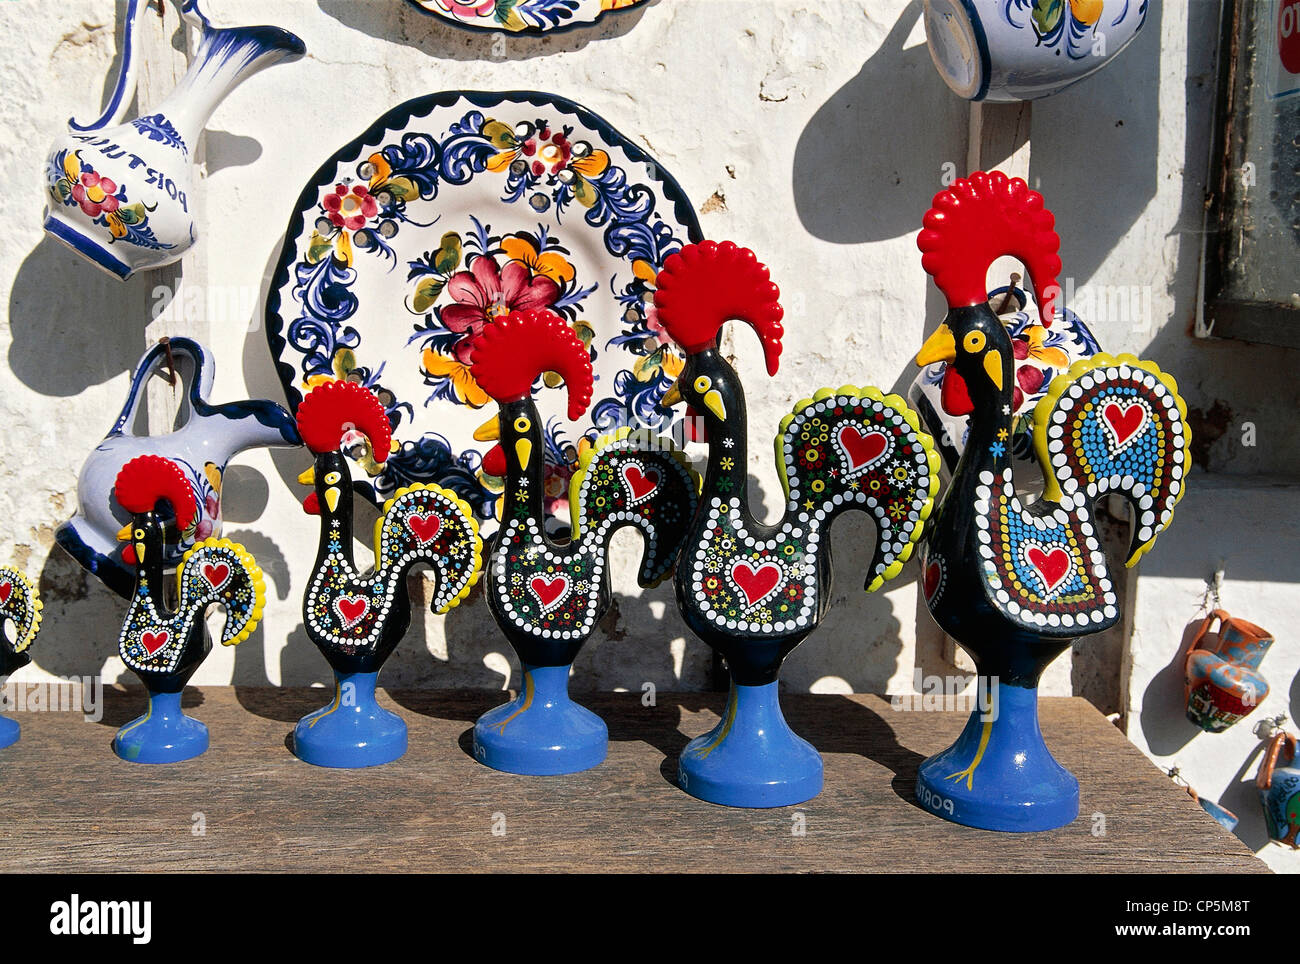 Portugal - Centro - Obidos. Vente d'artisanat : Coq en céramique symbole de Portugal. Banque D'Images